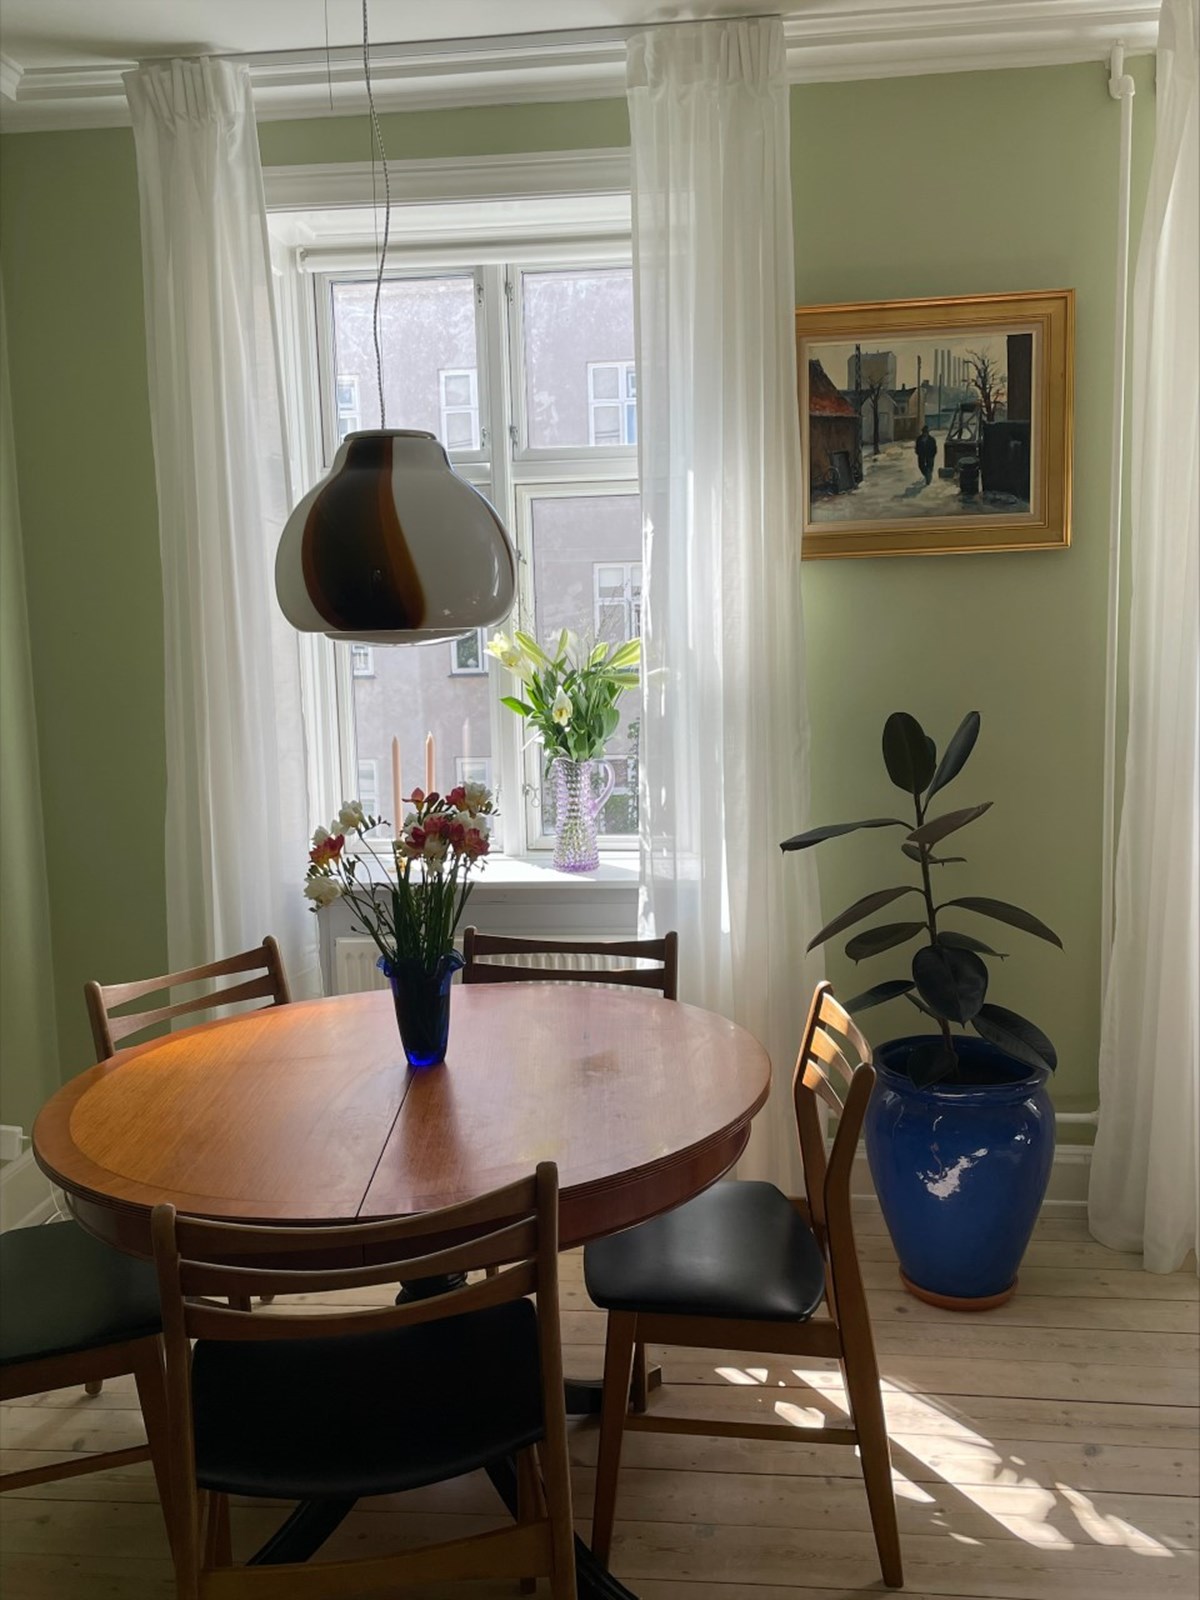 Laura elsker parrets spisebord, spisebordsstole og den smukke Murano-lampe. Hun er også særligt glad for den store, blå gulvkrukke, som hun har købt på DBA for 800 kroner. Billedet over den blå krukke har August arvet fra sin elskede morfar.